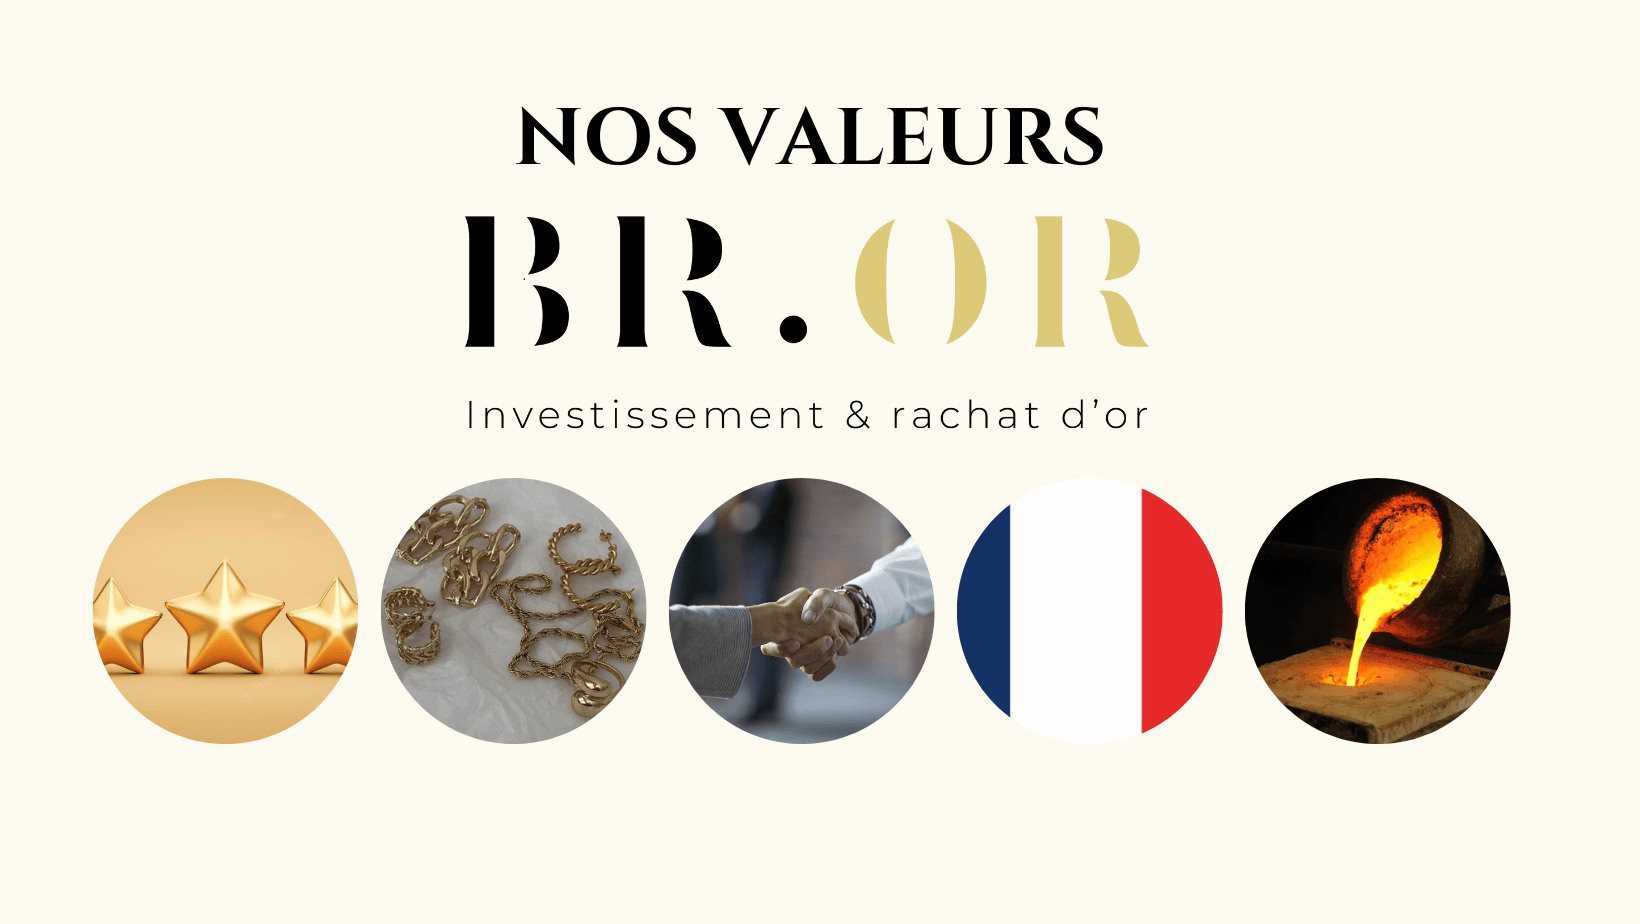 image représentant les 5 valeurs les plus importantes de notre entreprise avec le logo BROR